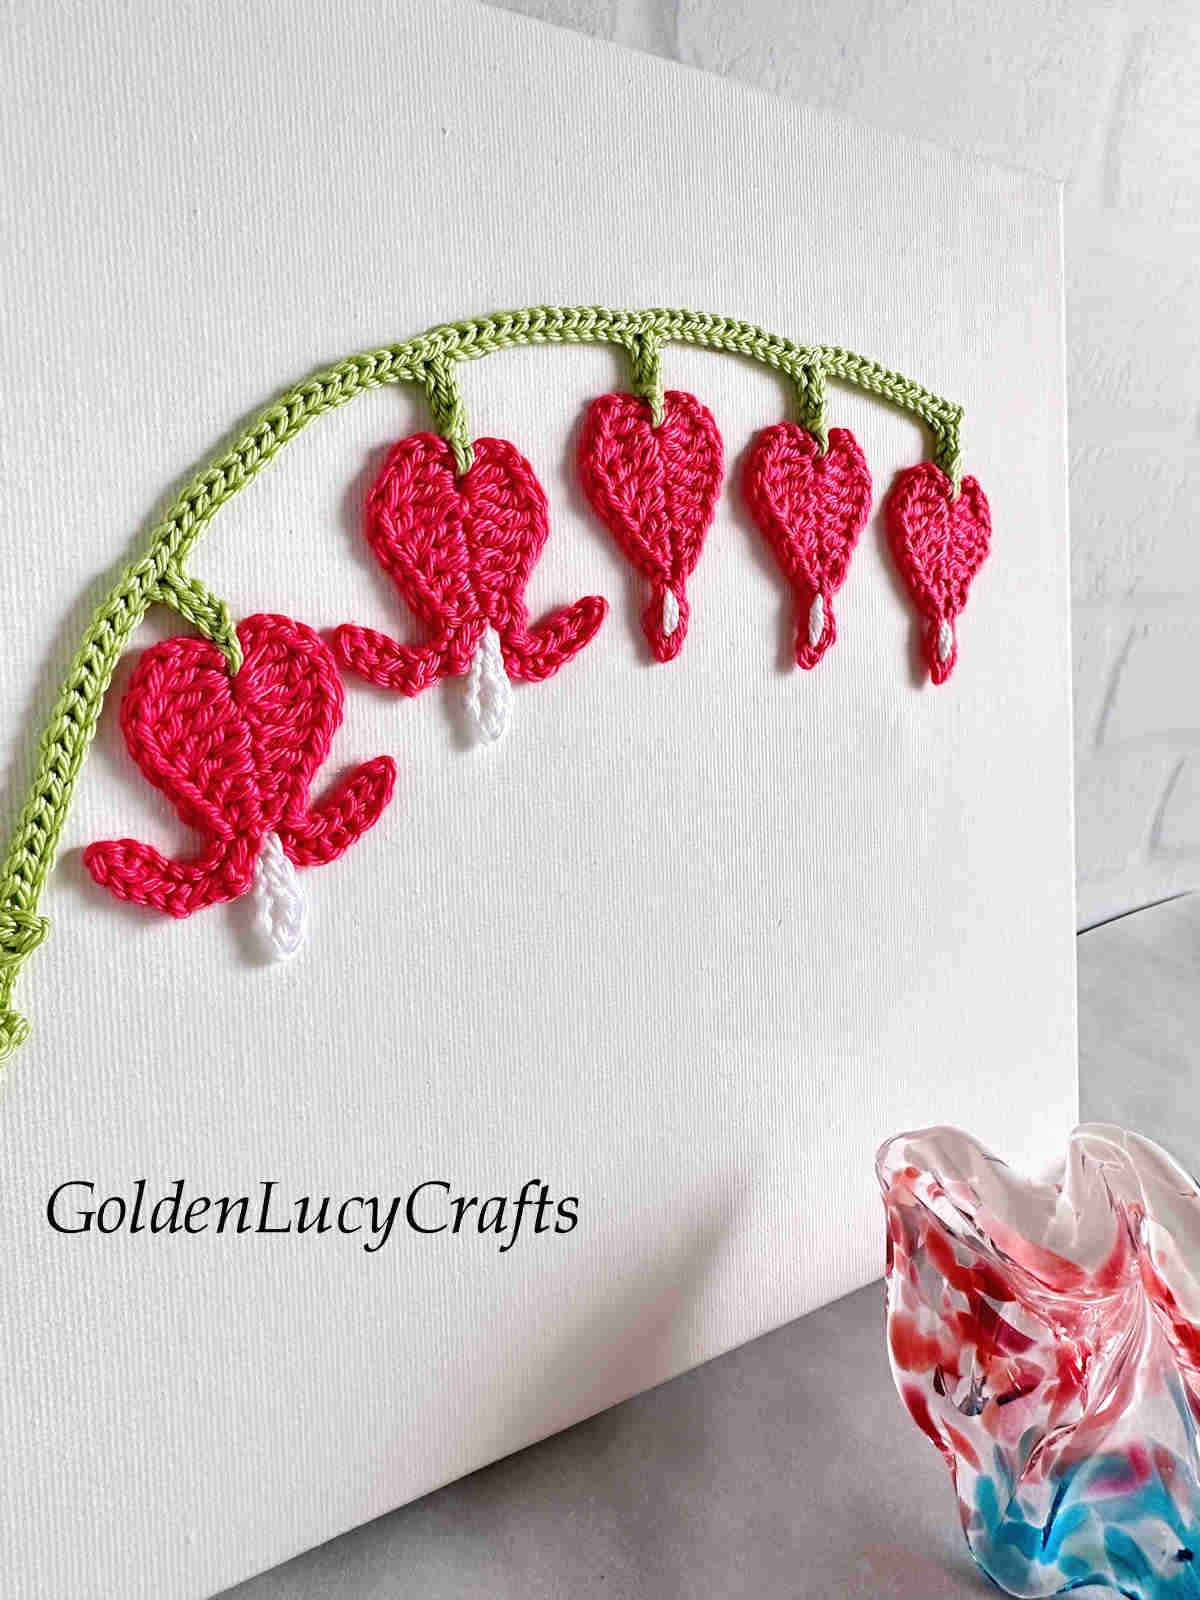 Bleeding heart crochet wall art close-up picture.